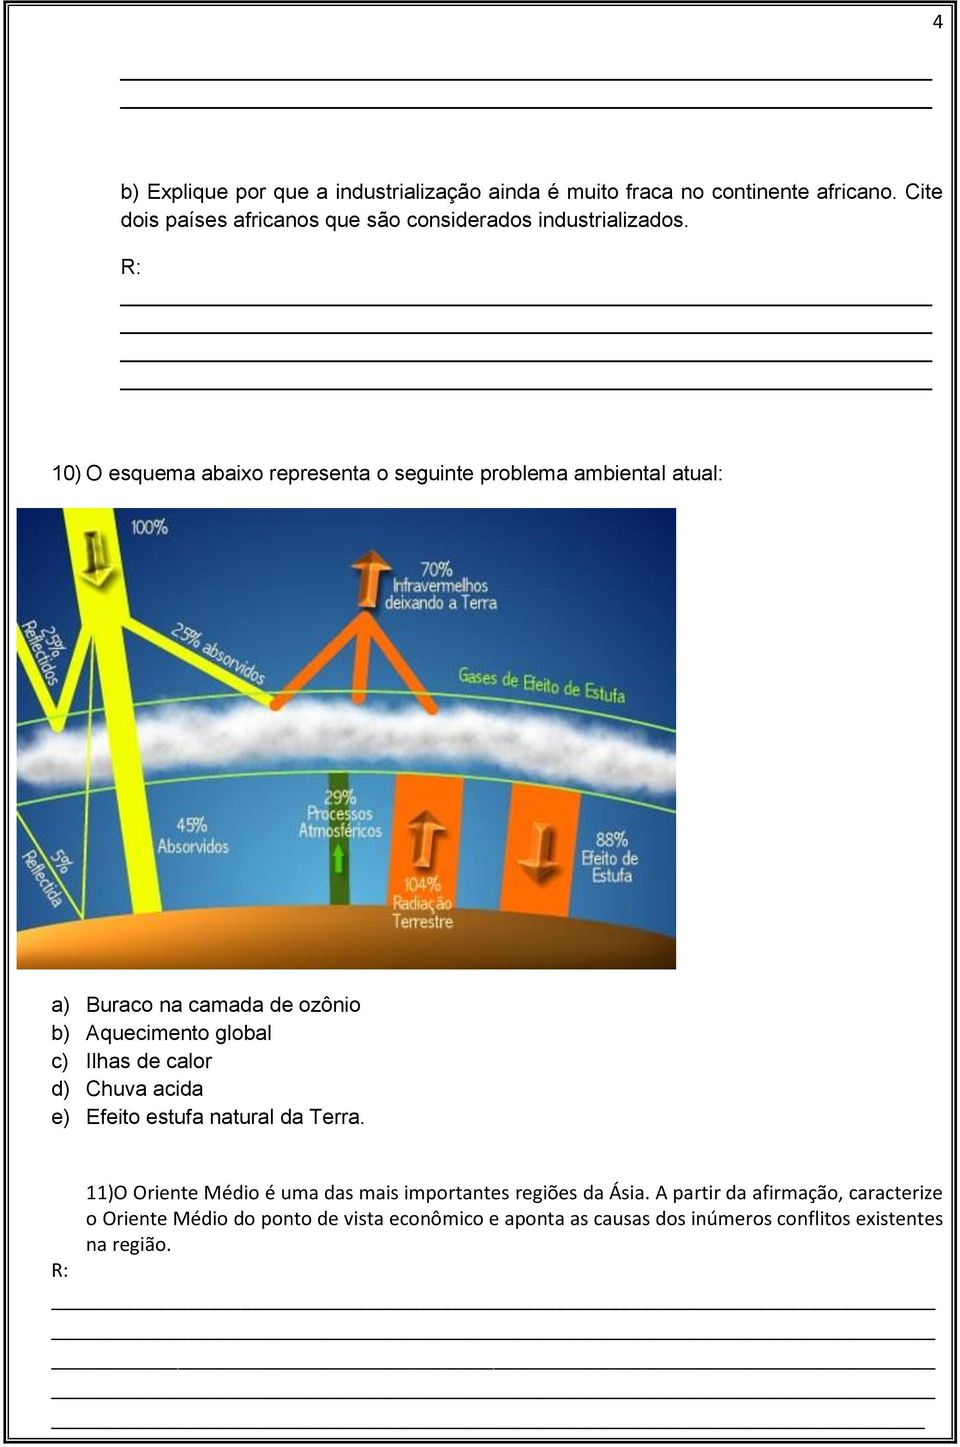 10) O esquema abaixo representa o seguinte problema ambiental atual: a) Buraco na camada de ozônio b) Aquecimento global c) Ilhas de